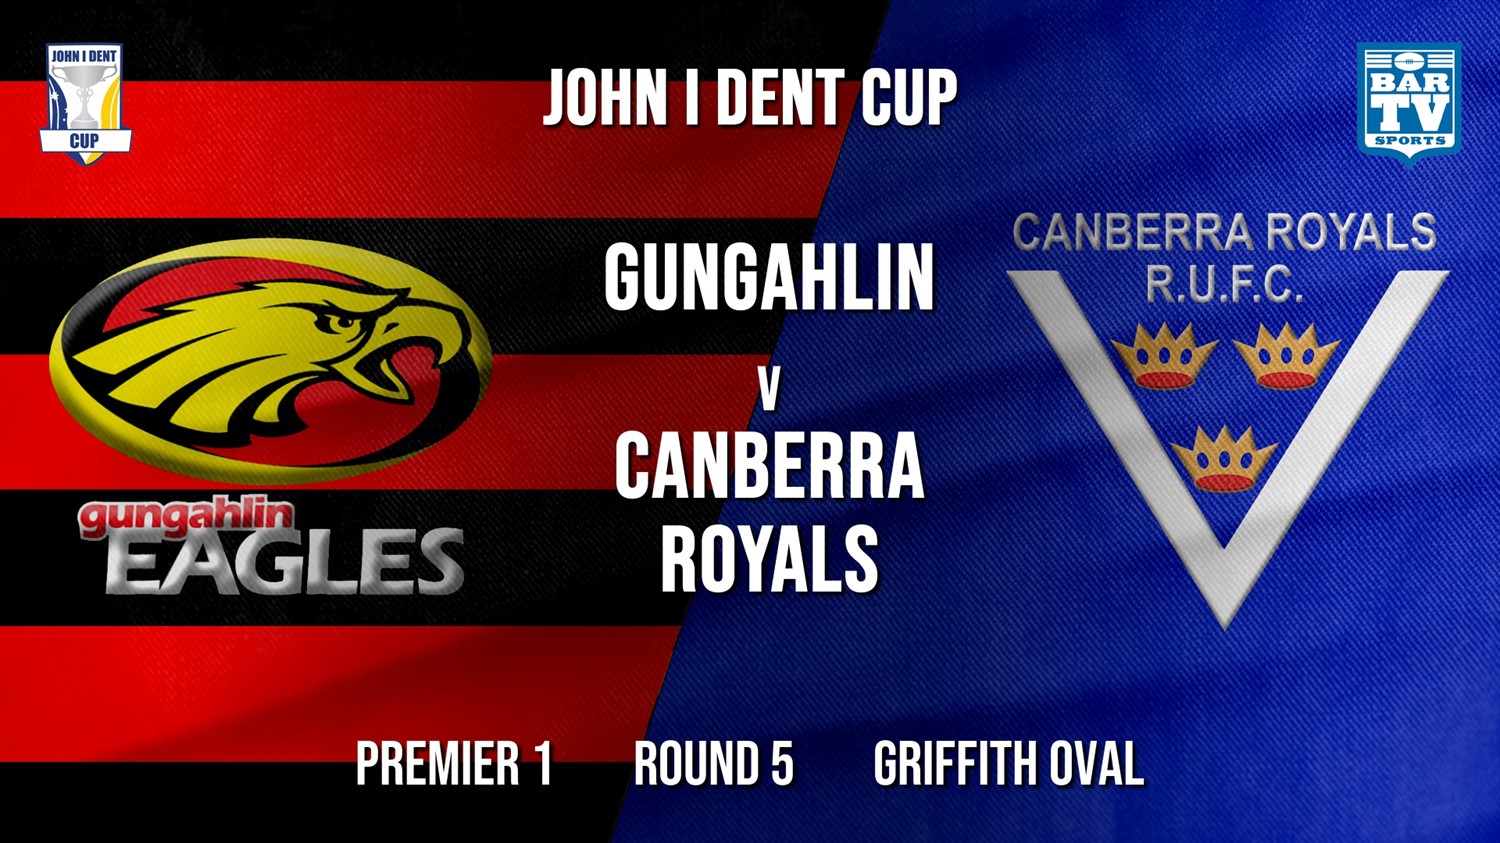 John I Dent Round 5 - Premier 1 - Gungahlin Eagles v Canberra Royals (1) Minigame Slate Image